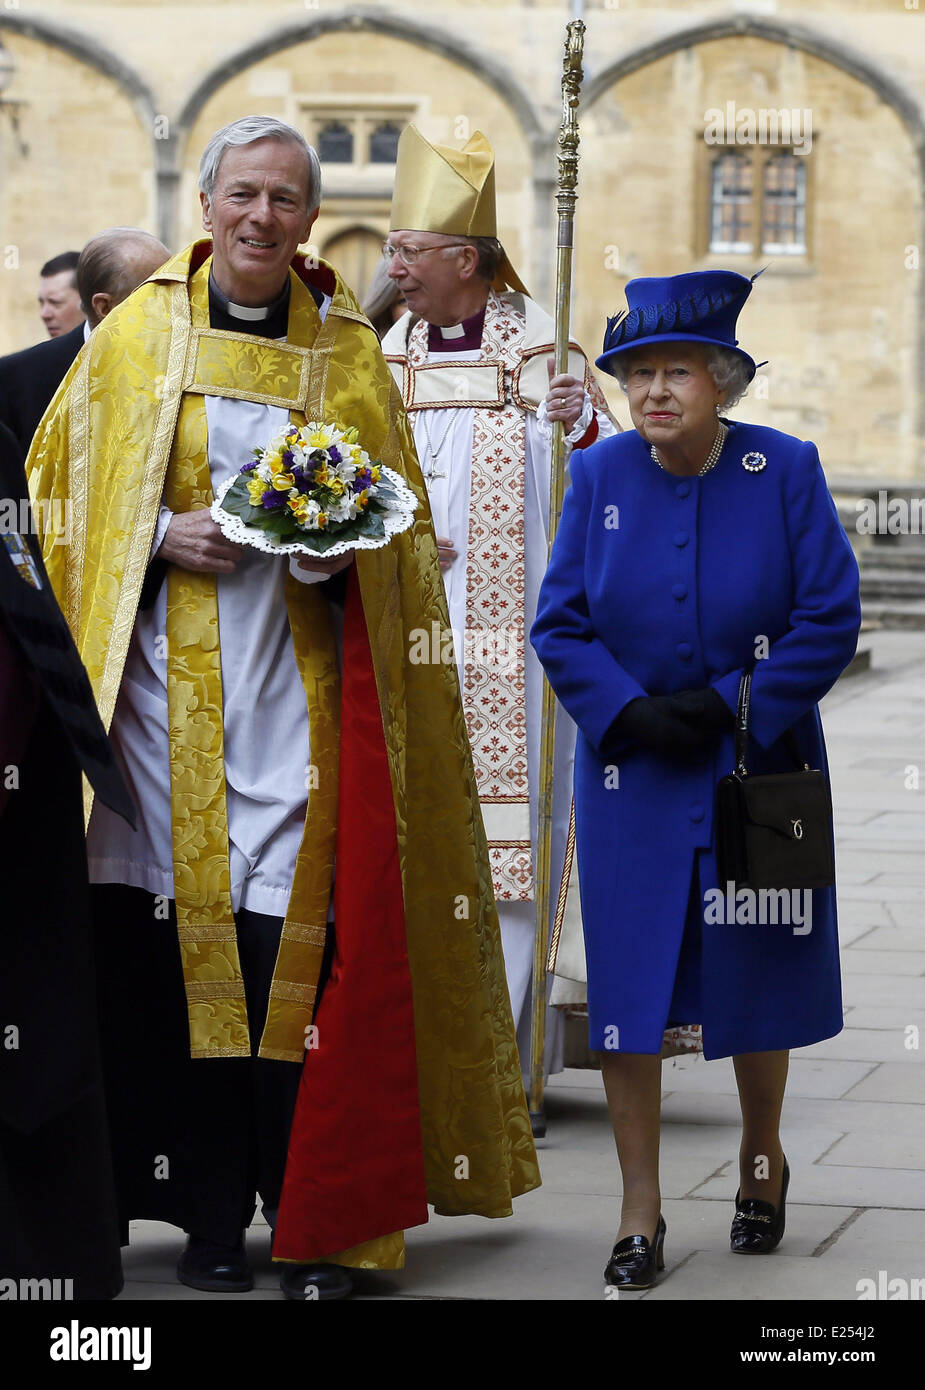 La reine Elizabeth II et le Prince Philip, duc d'Édimbourg au cours de l'entretien Jeudi saint menée par l'évêque de Worcester Dr John Inge, à la Cathédrale Christ Church à Oxford. Pendant le service, la reine a distribué l'argent Saint à 87 femmes et 87 hommes, un pour chacun des 87 ans de la Reine. Chaque récipiendaire reçoit deux sacs à main, un rouge et un blanc. Le sac à main rouge contient une pièce de 5 livres et 50 pence pièce commémorant le 60e anniversaire de du couronnement de la Reine. La bourse blanche ne contiennent uniquement de l'argent Saint frappées. Cela prend la forme d'argent un, deux, trois et quatre cent Banque D'Images